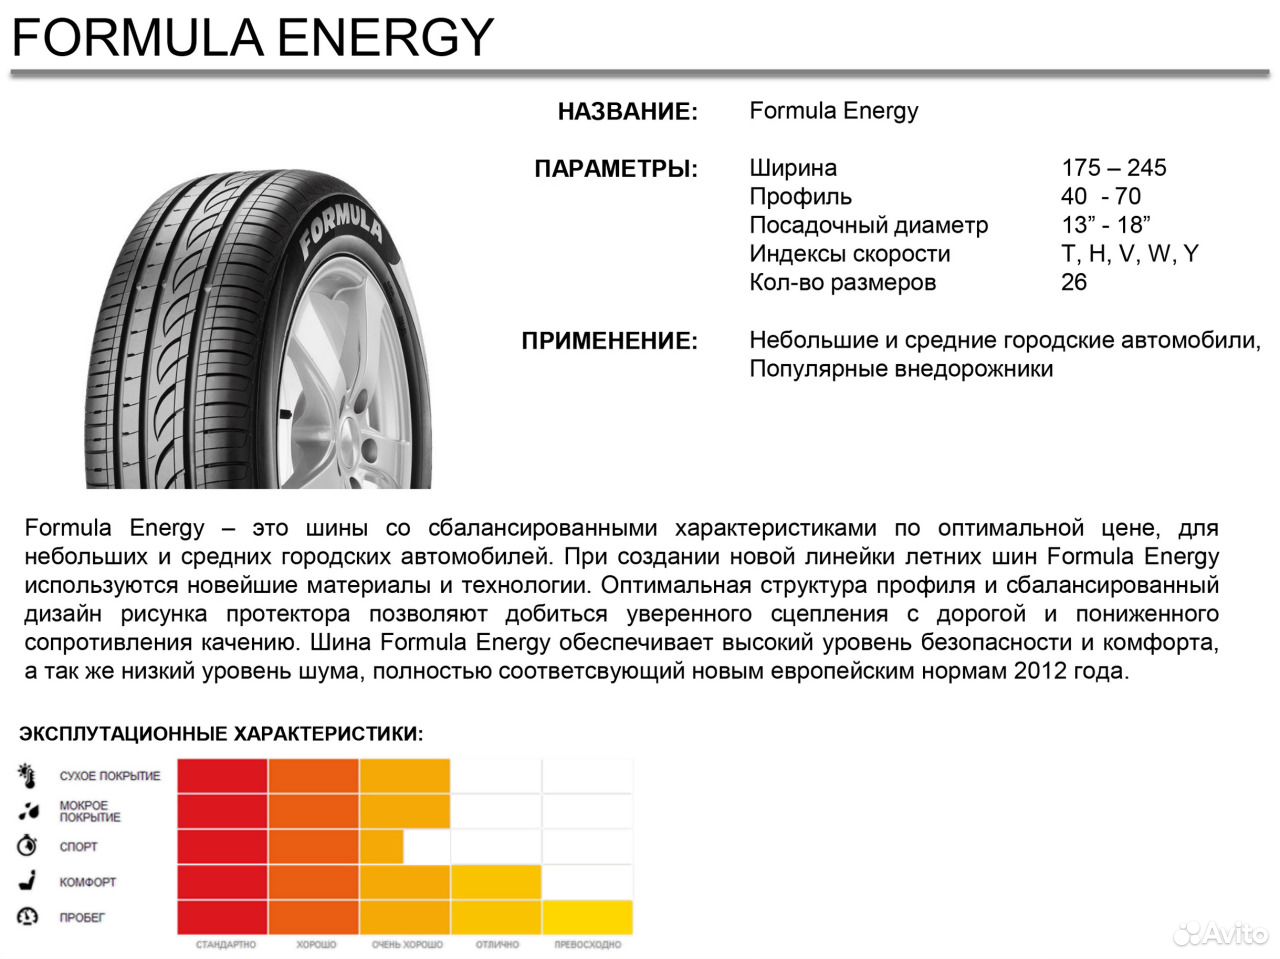 Pirelli formula energy отзывы лето